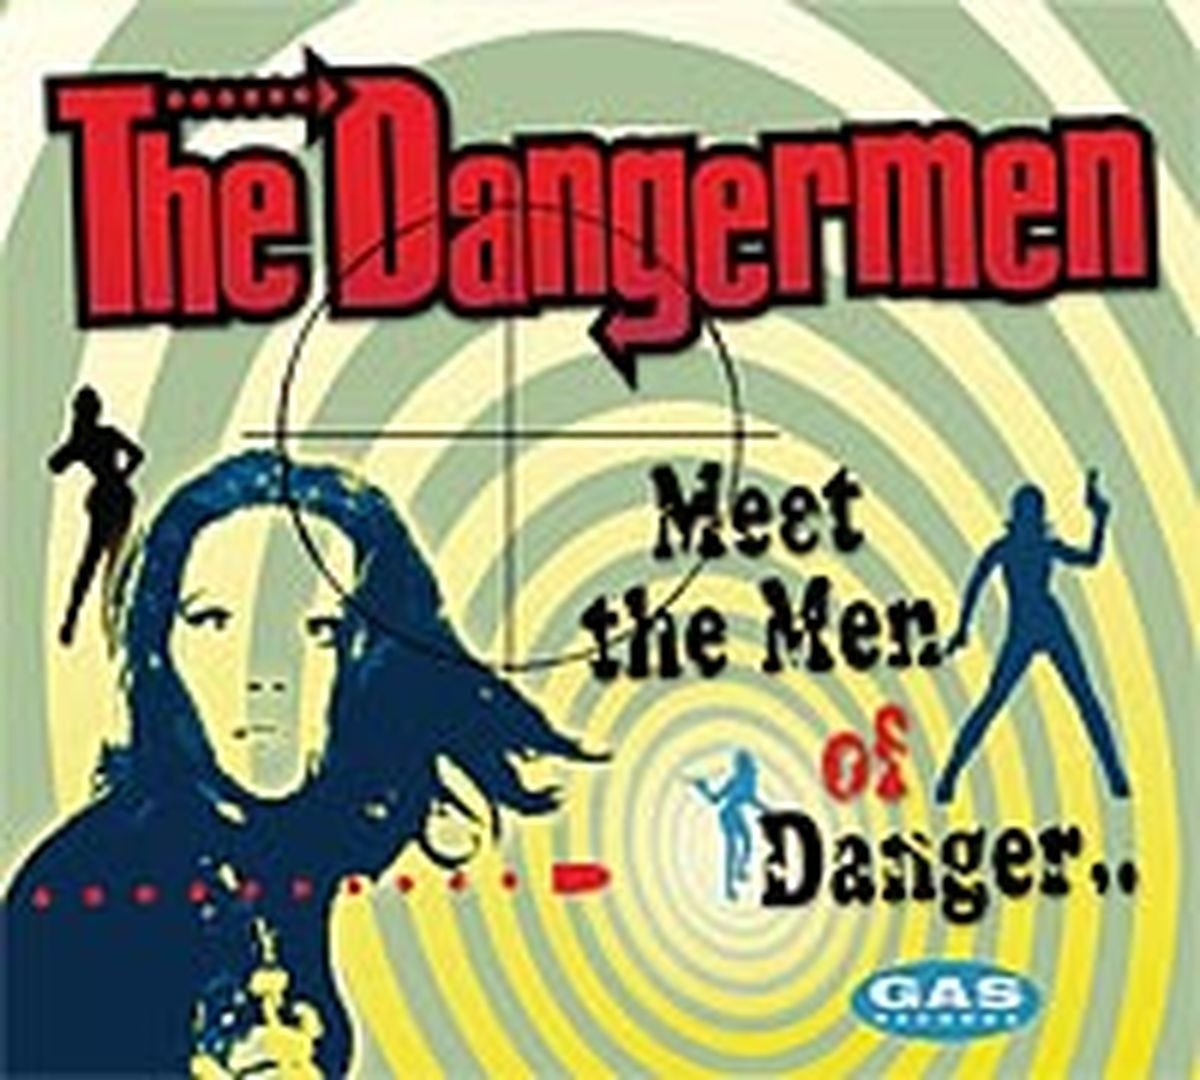 Dangermen Meet The Men CD for sale